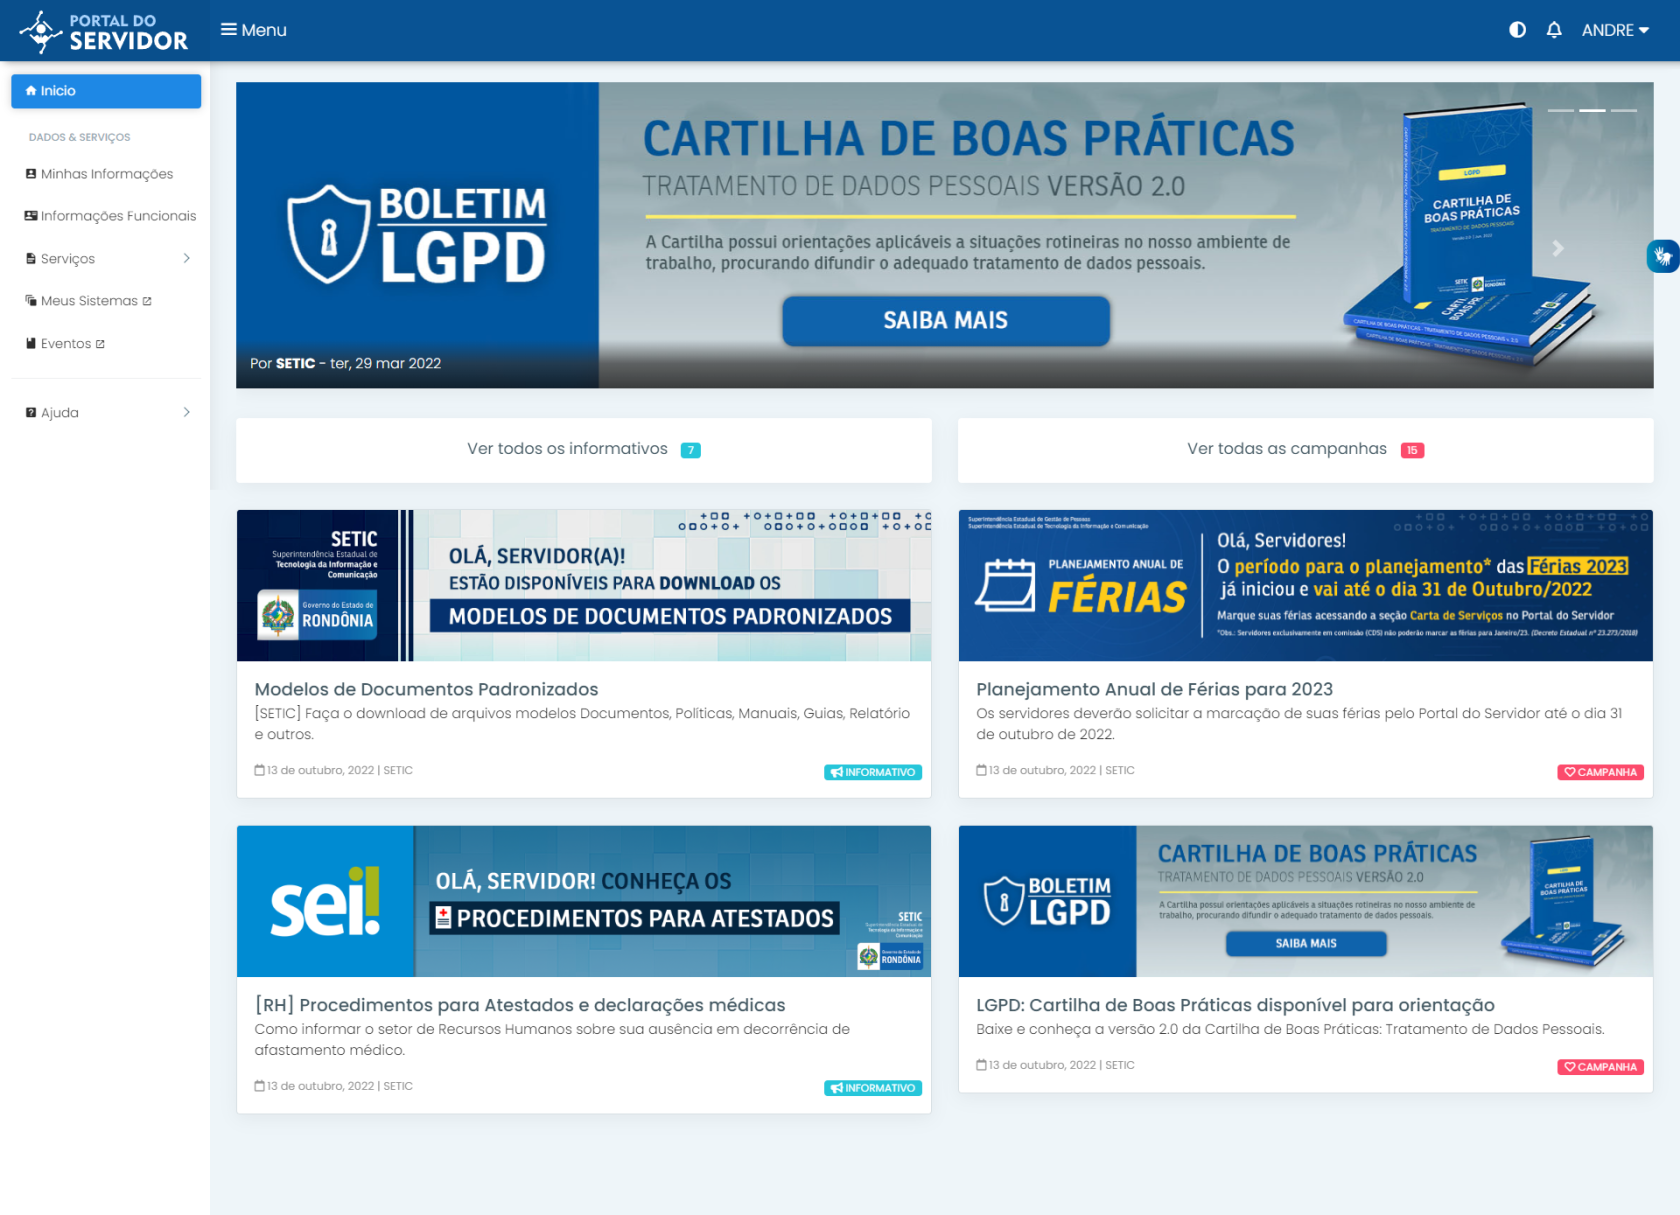 Portal do Servidor - Copia.png